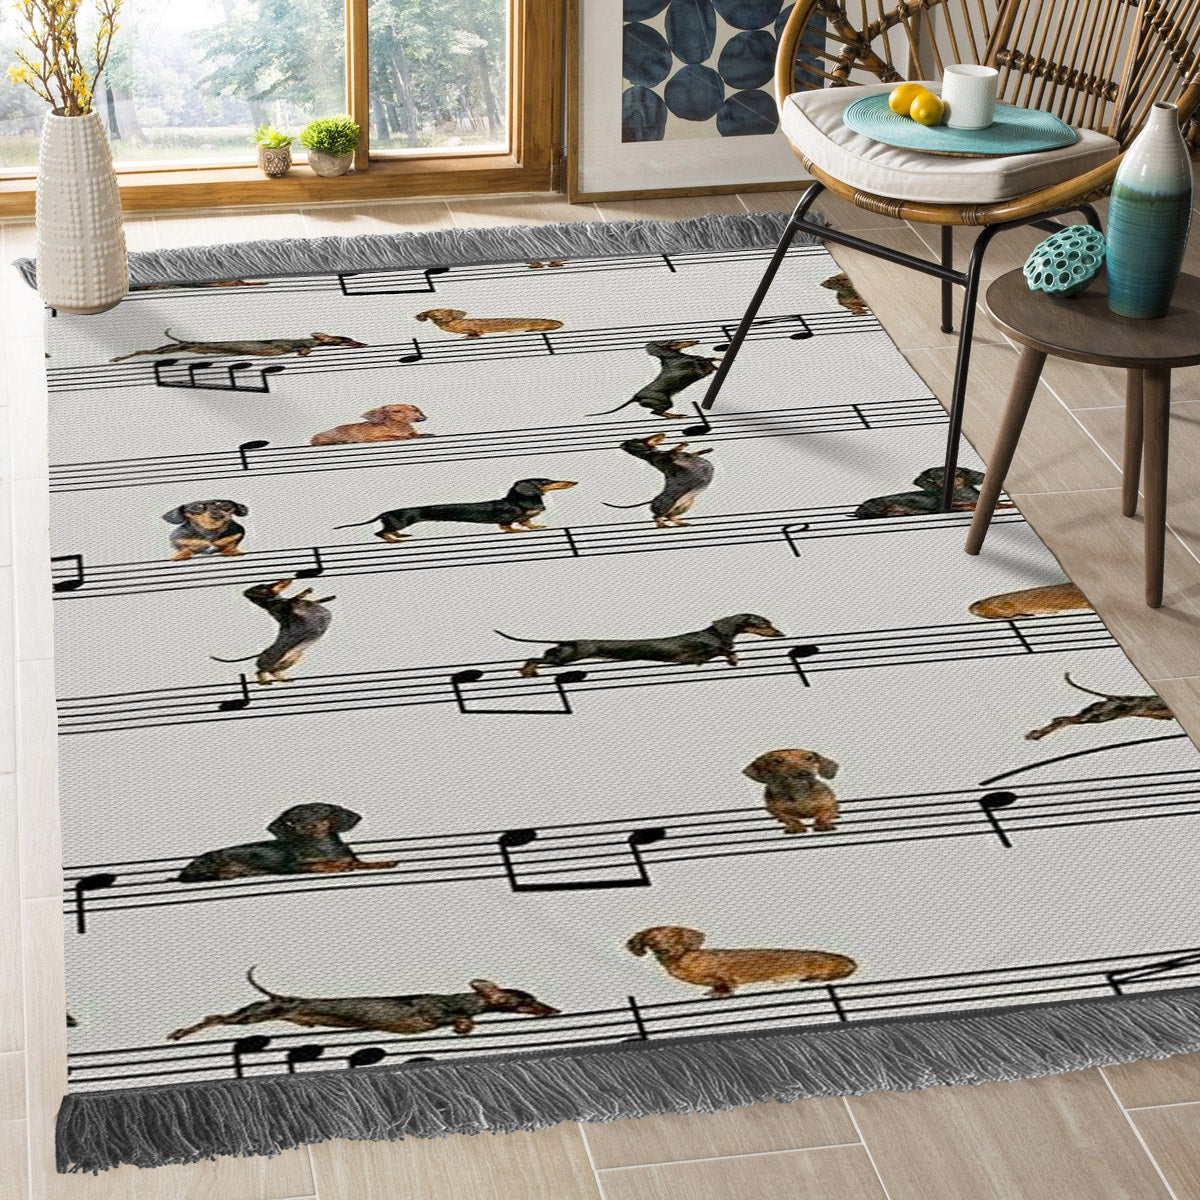 Dachshund HN1609057F Decorative Floor-cloth